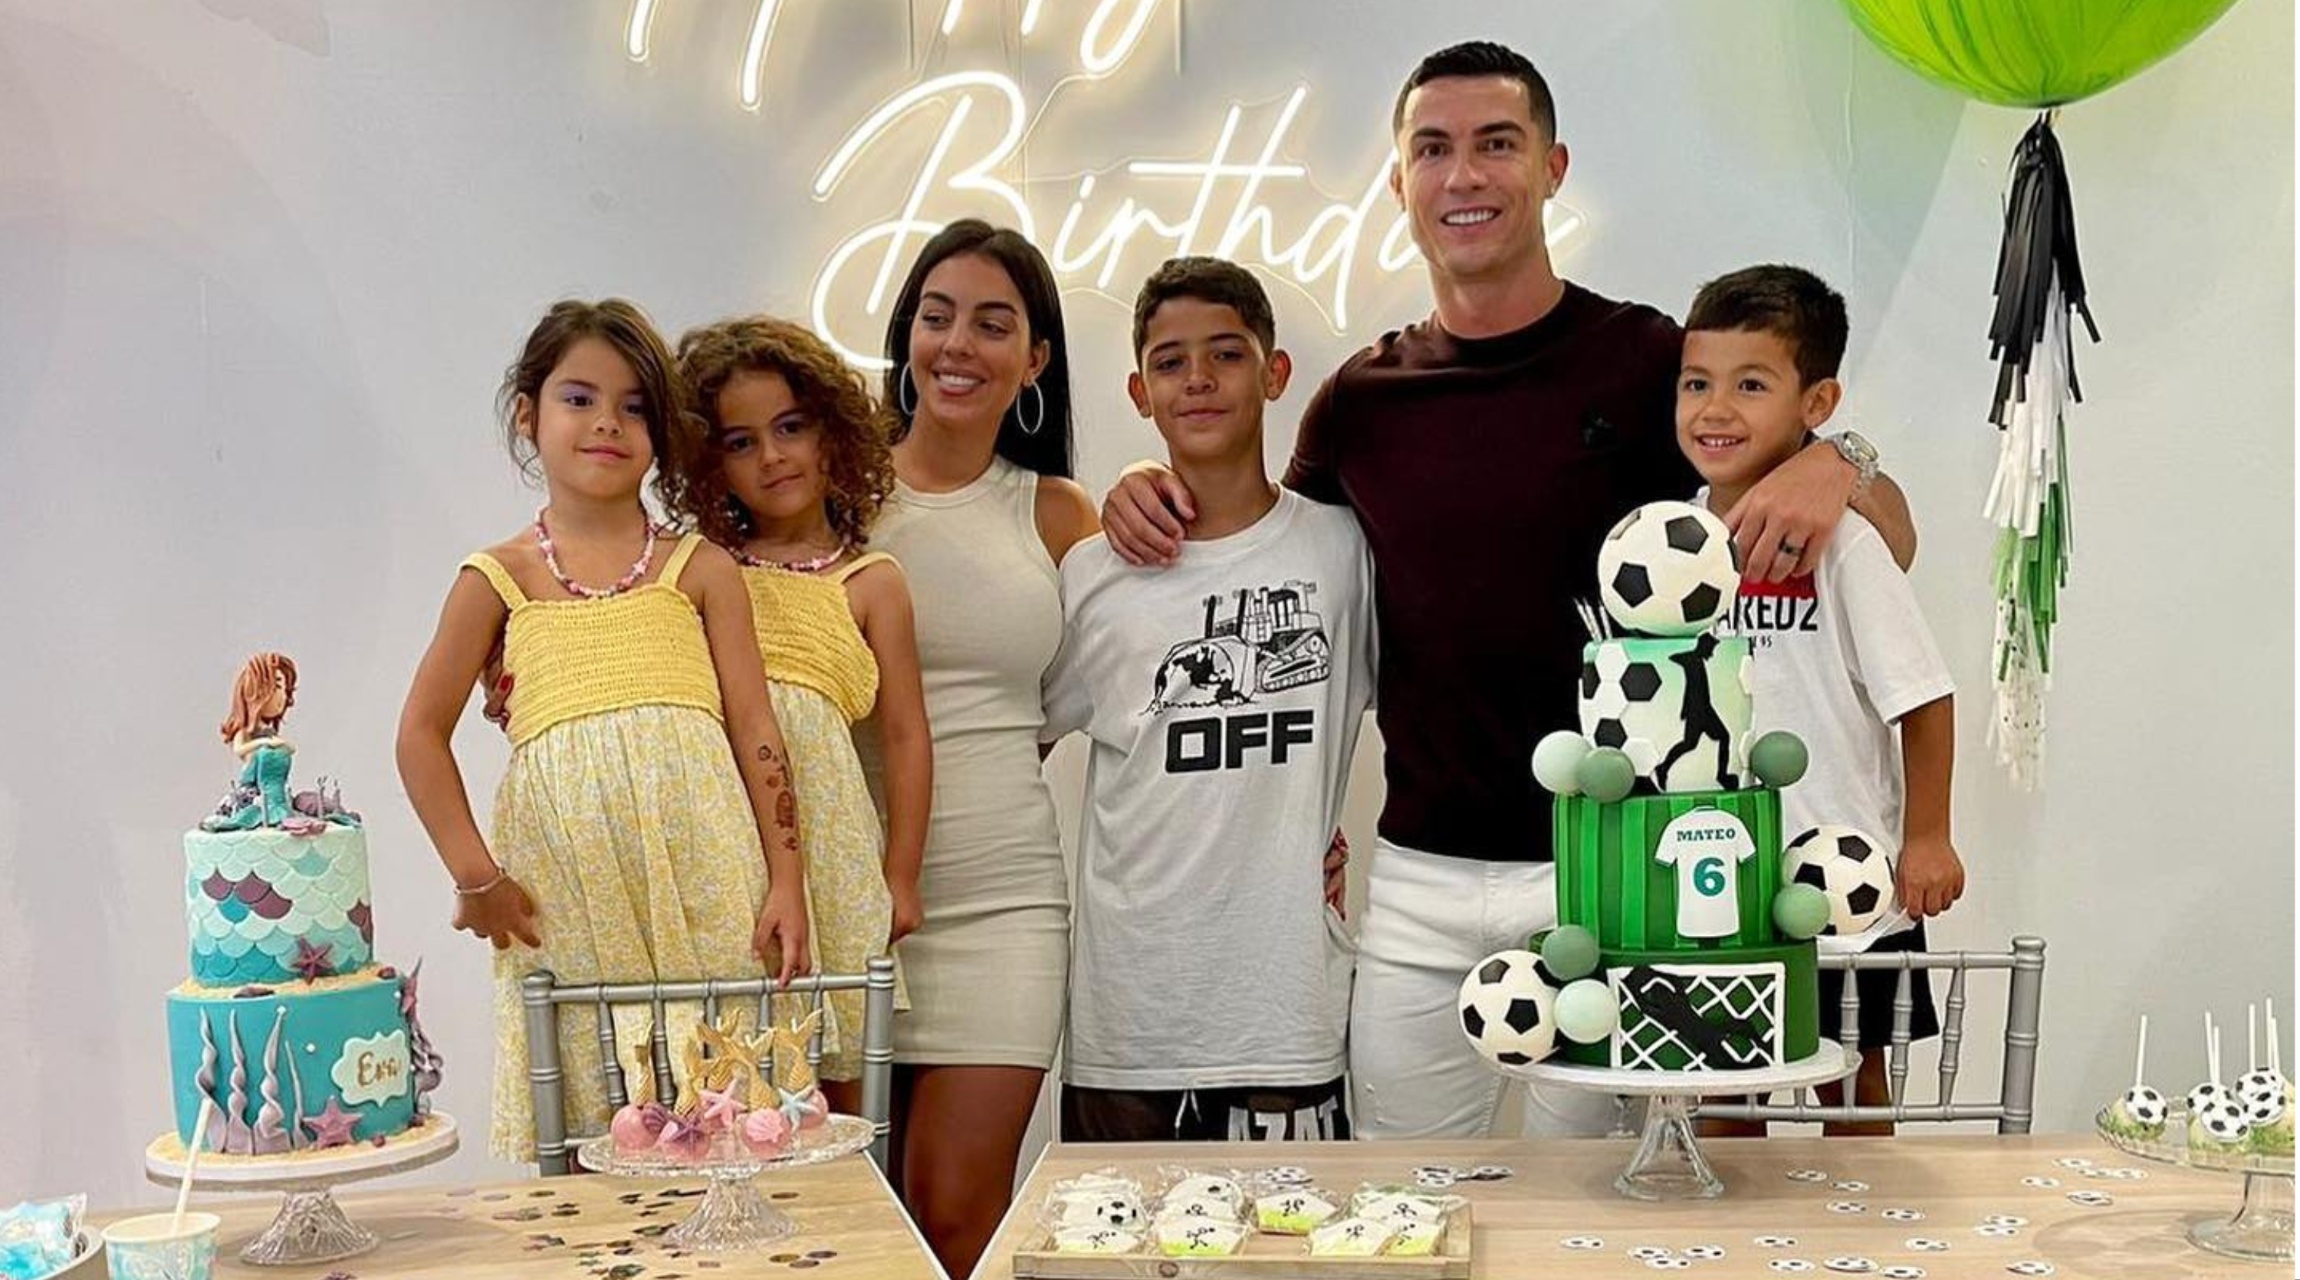 Cristiano Ronaldo y el emotivo mensaje de cumpleaños a su hijo